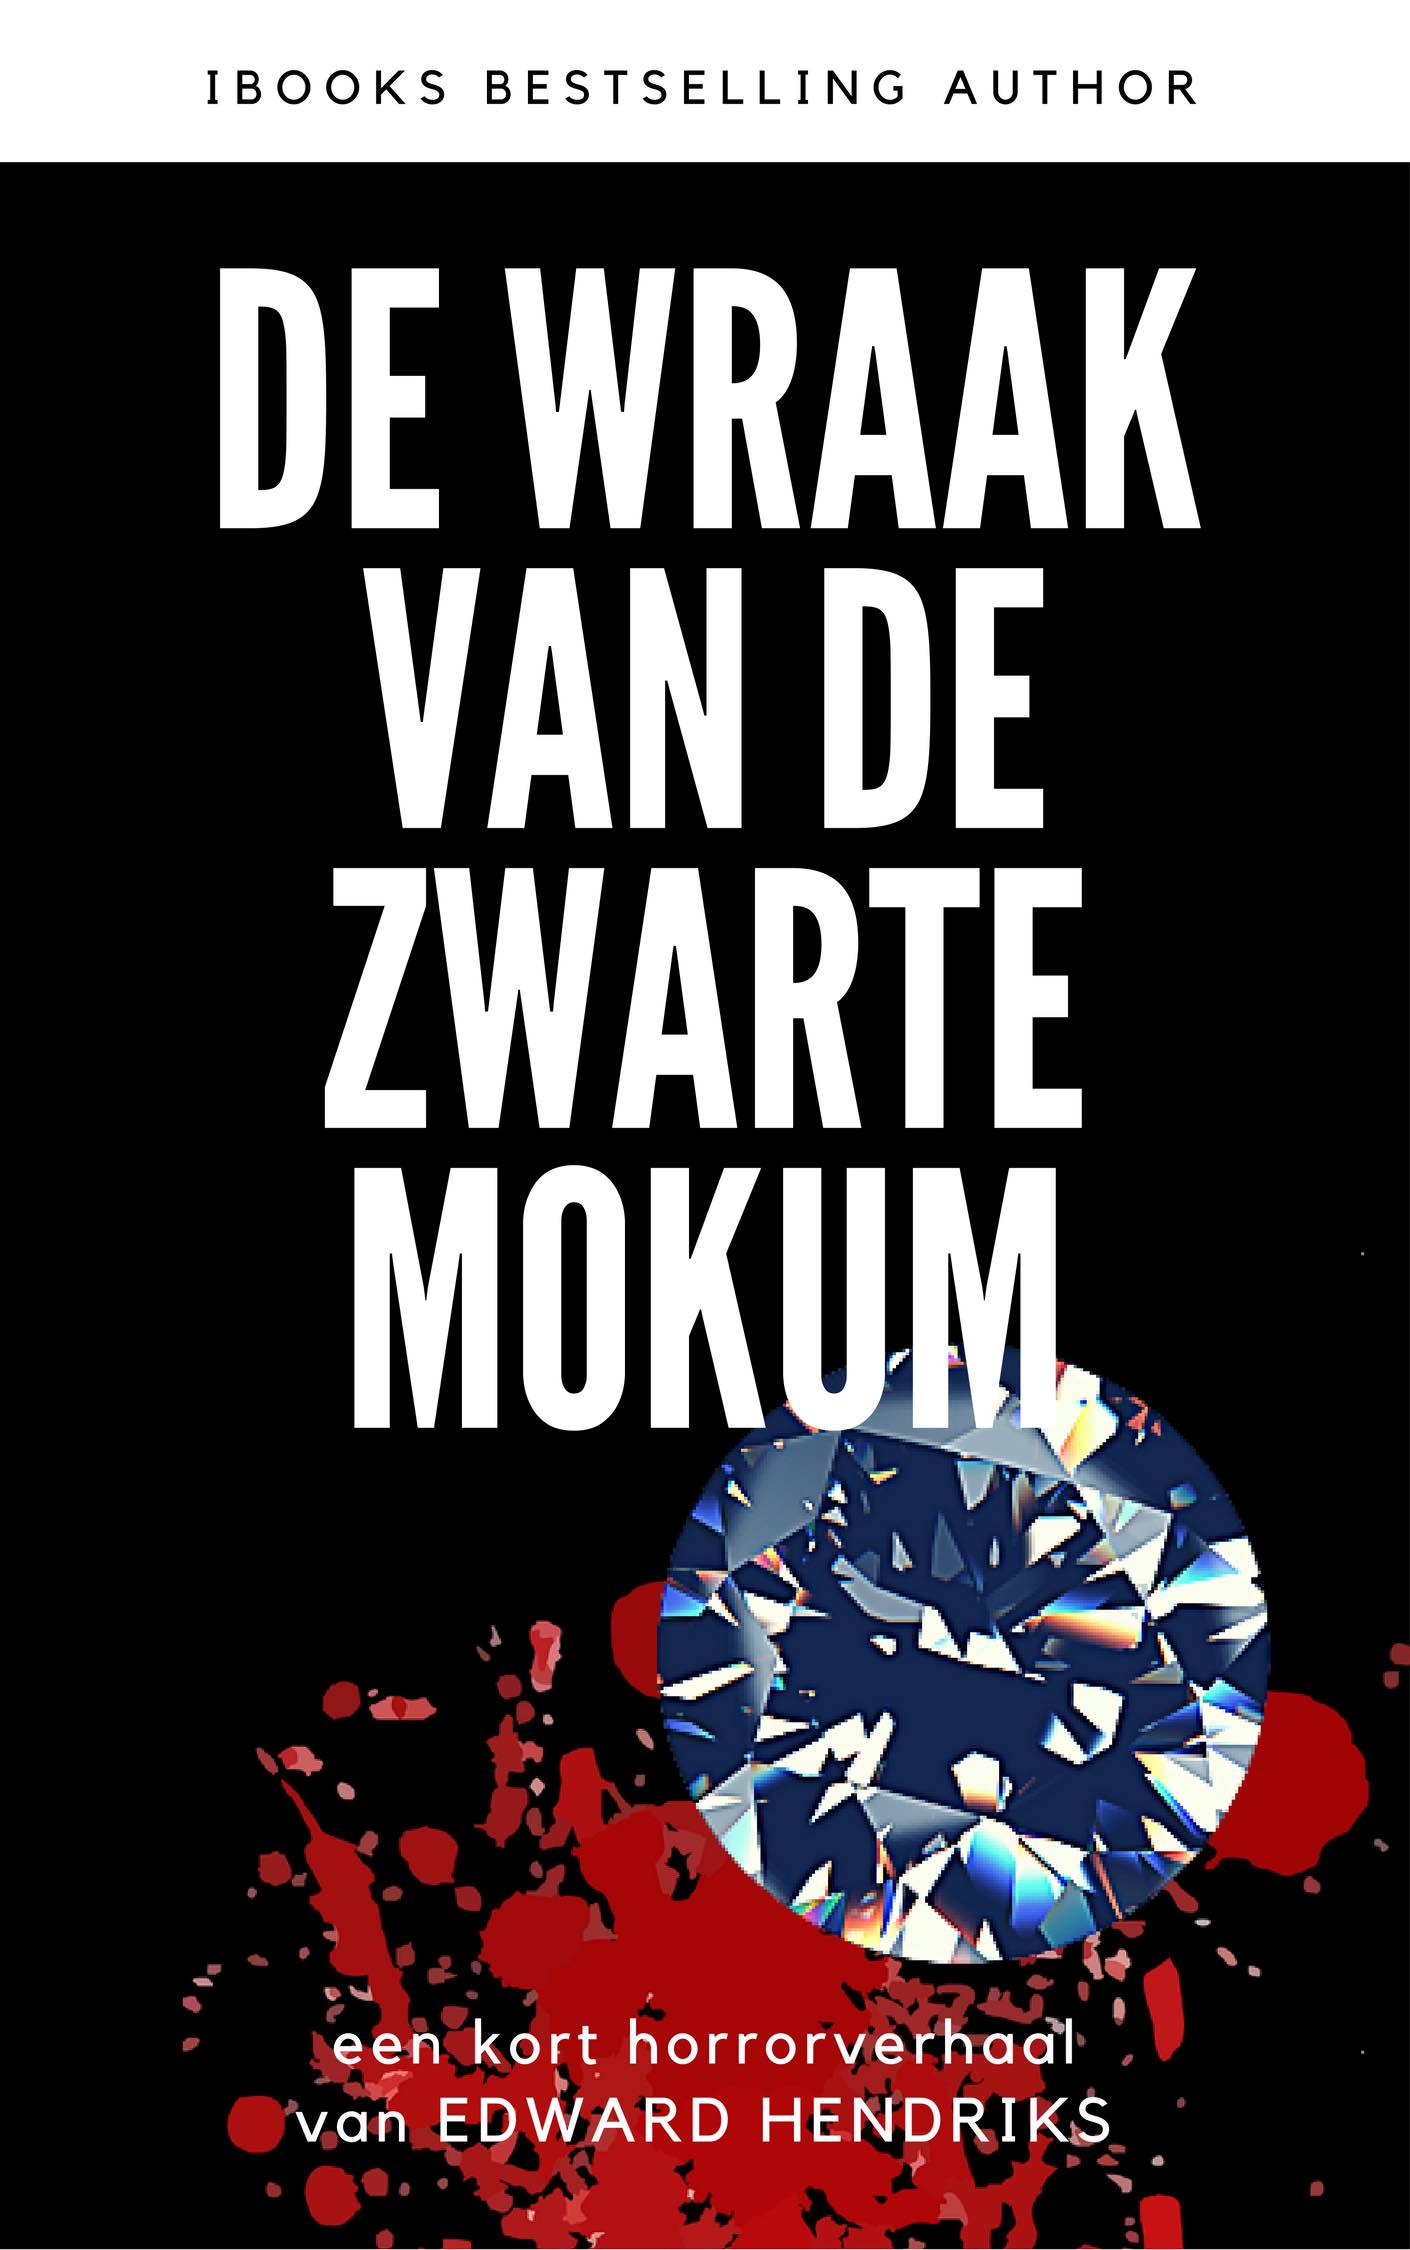 Gratis ebook: de WRAAK VAN DE ZWARTE MOKUM